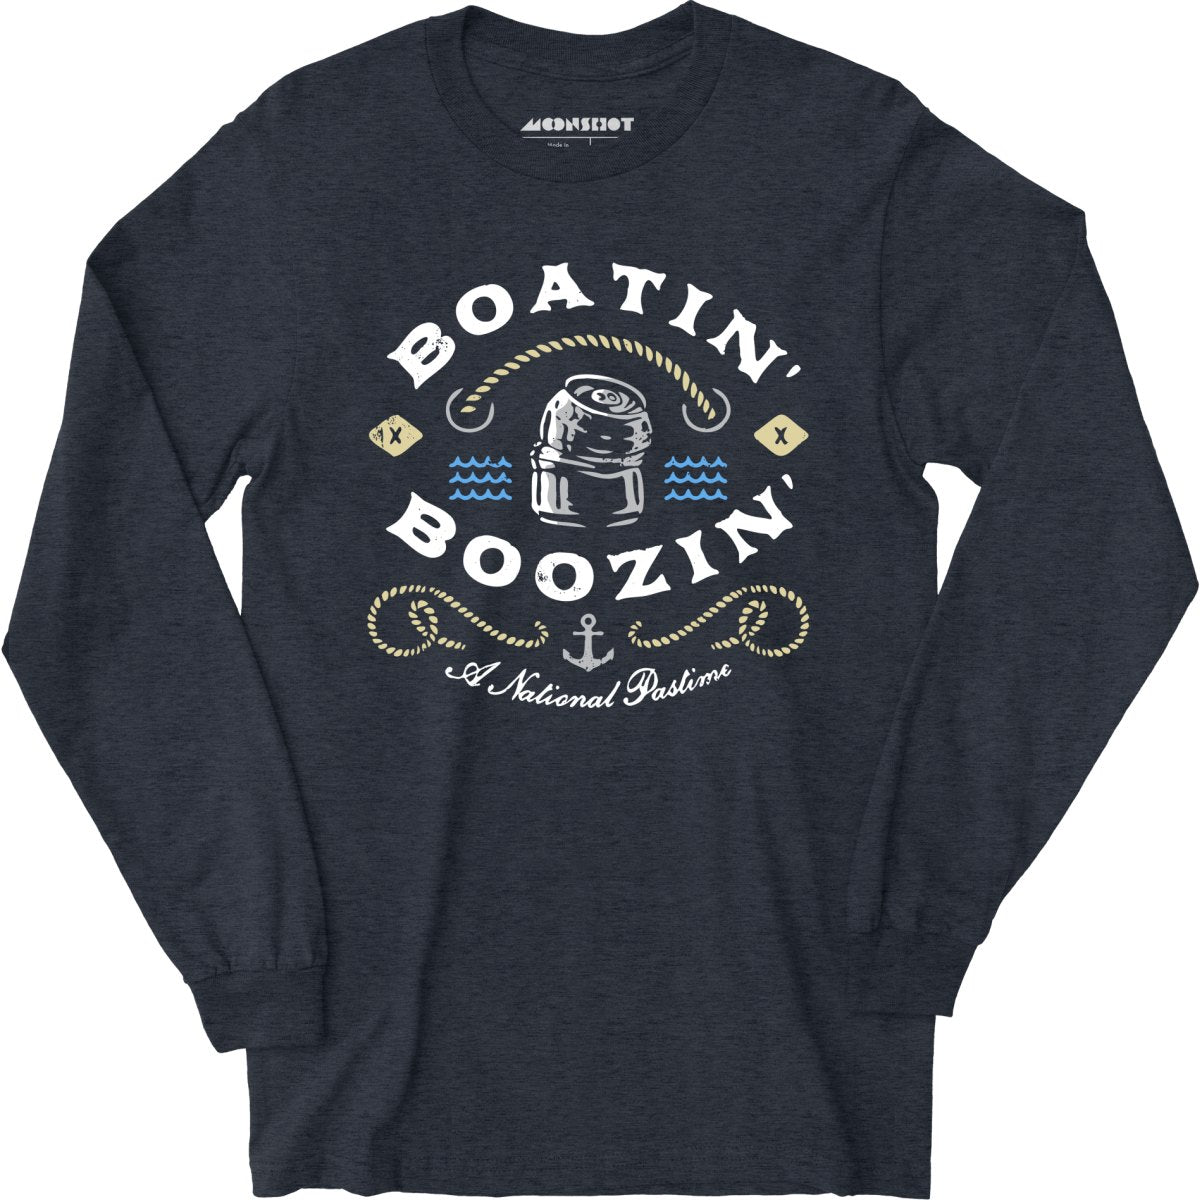 Boatin' & Boozin' - Long Sleeve T-Shirt